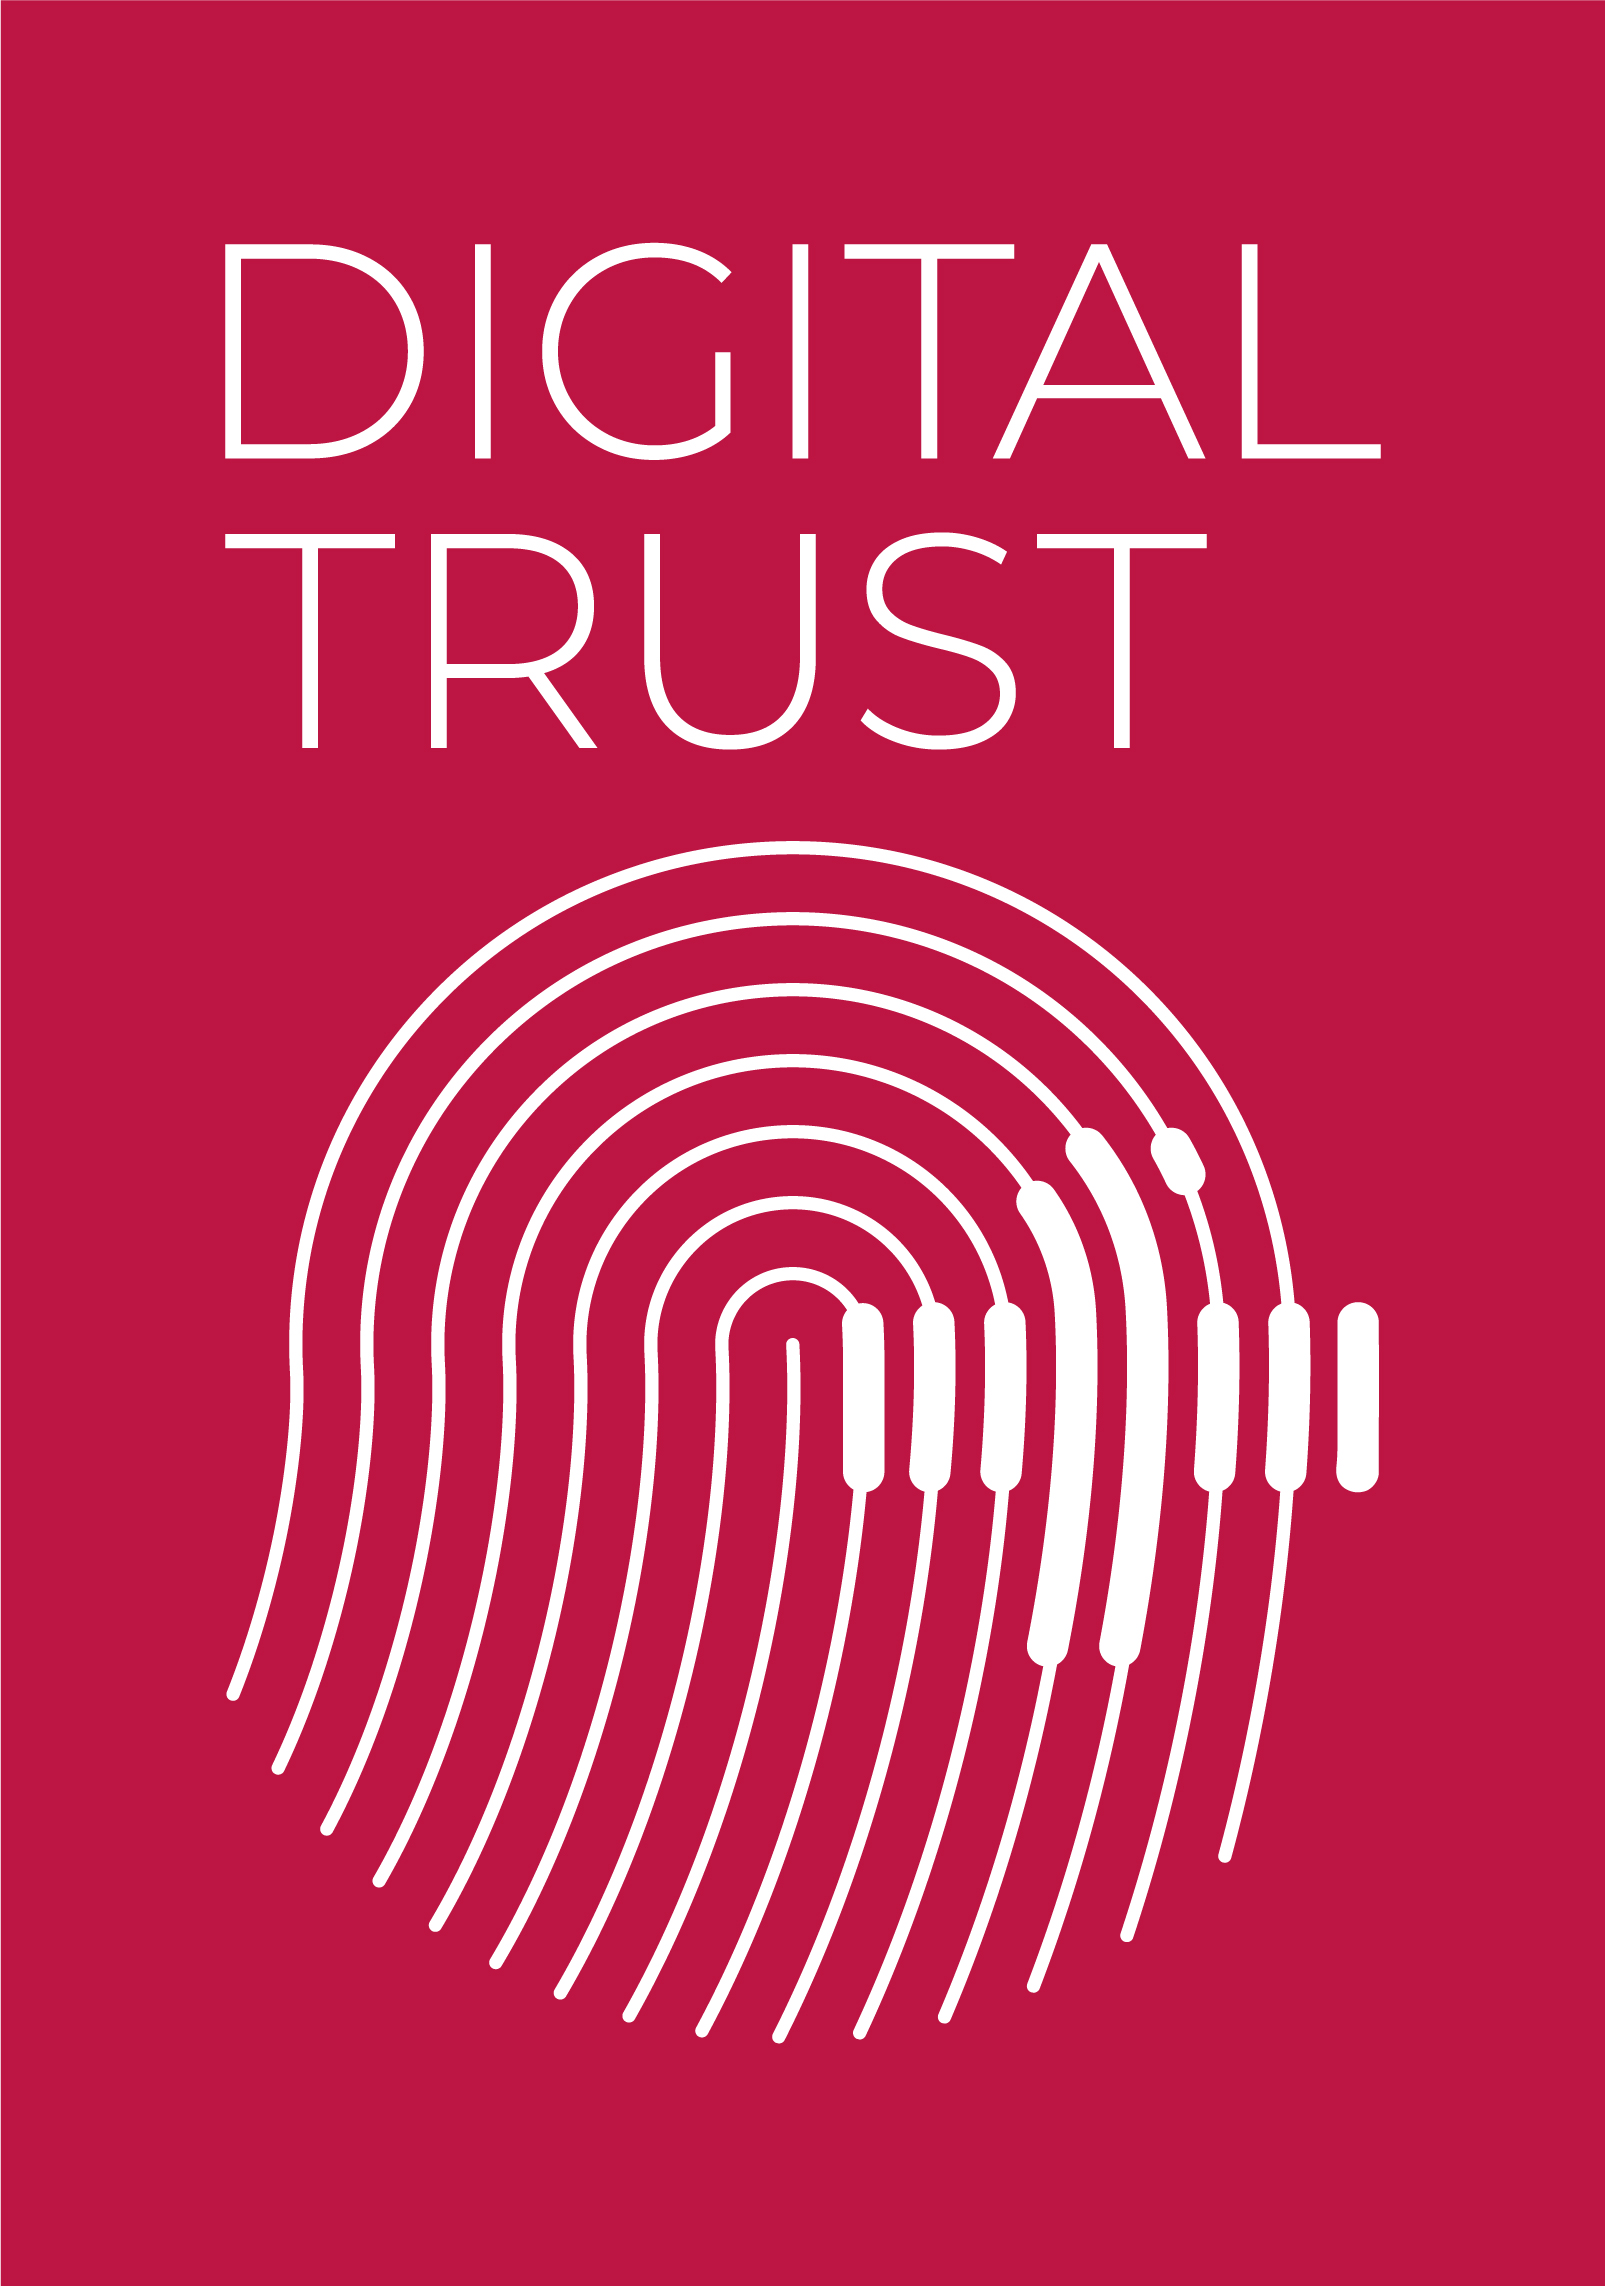 La "Etiqueta de Confianza Digital", en formato rectangular vertical, lanzada en Suiza para buscar la rendición de cuentas en el ámbito digital